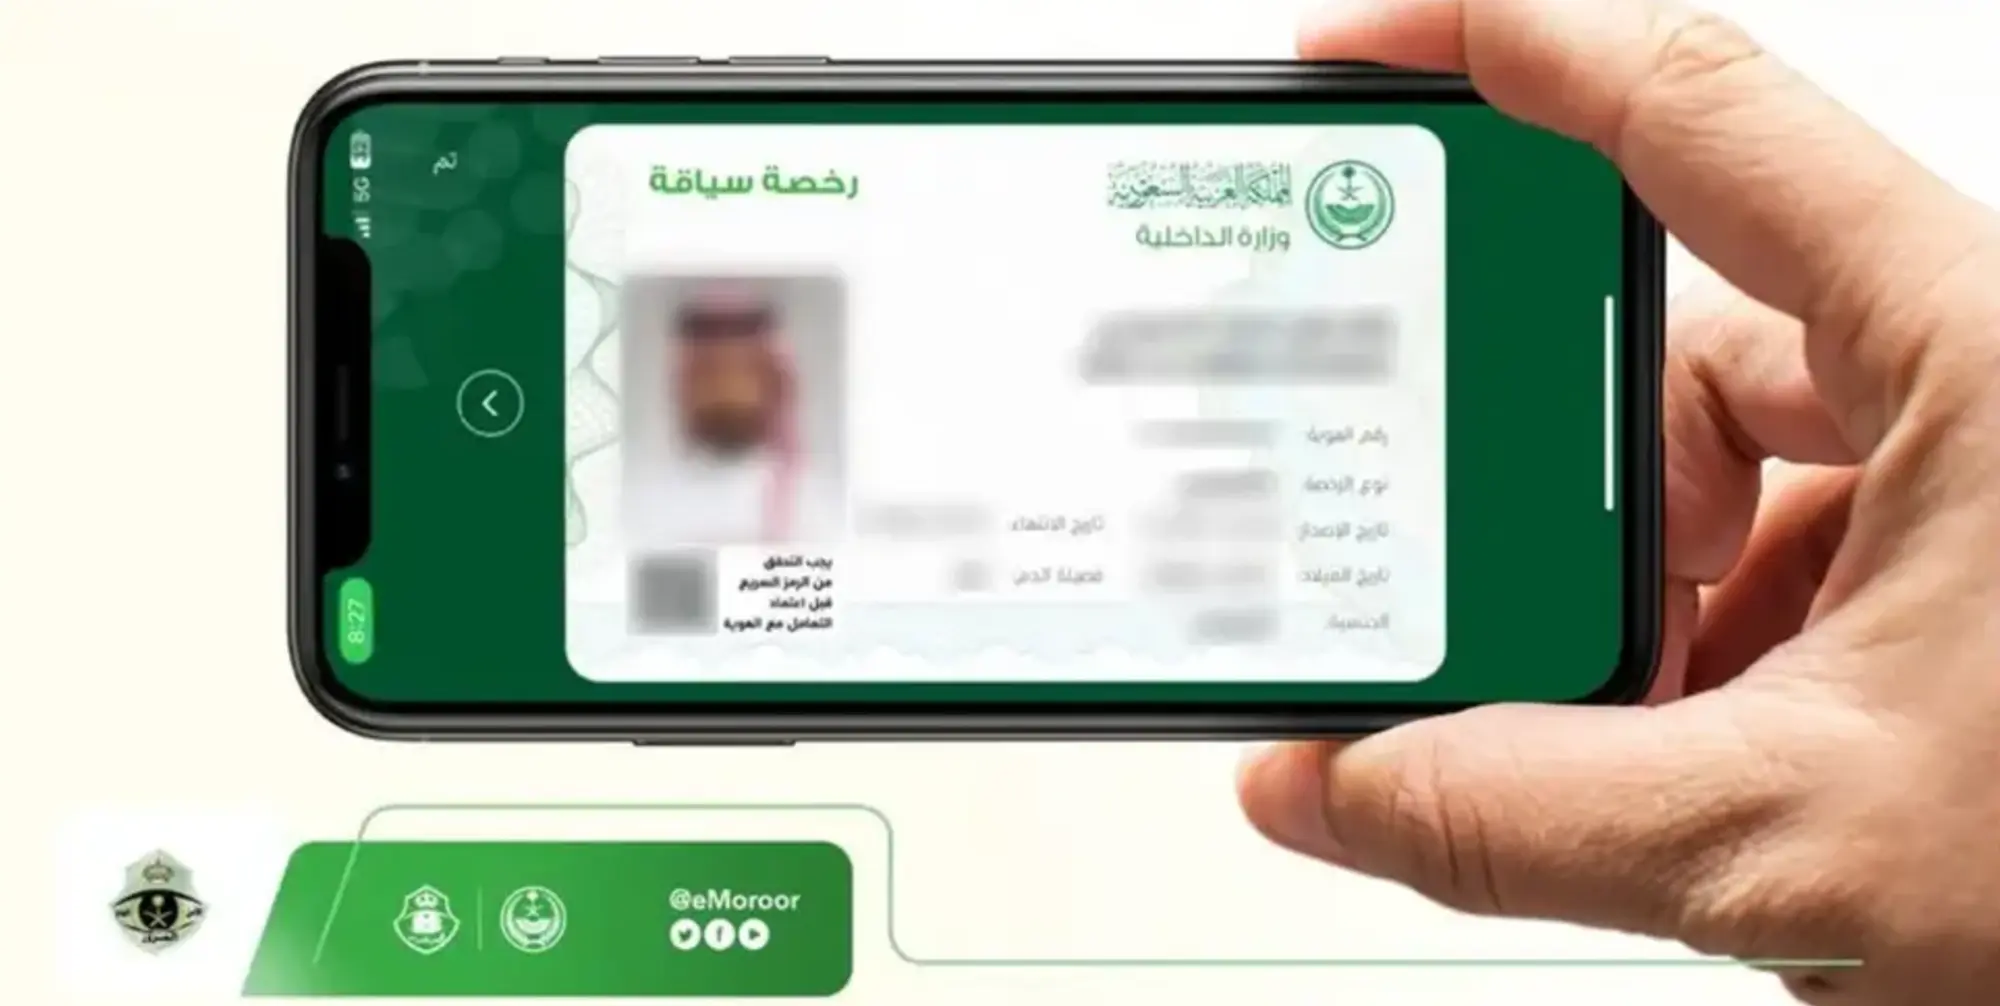 كيفية تجديد رخصة القيادة الخاصة اون لاين وشروطها في السعودية؟ 3